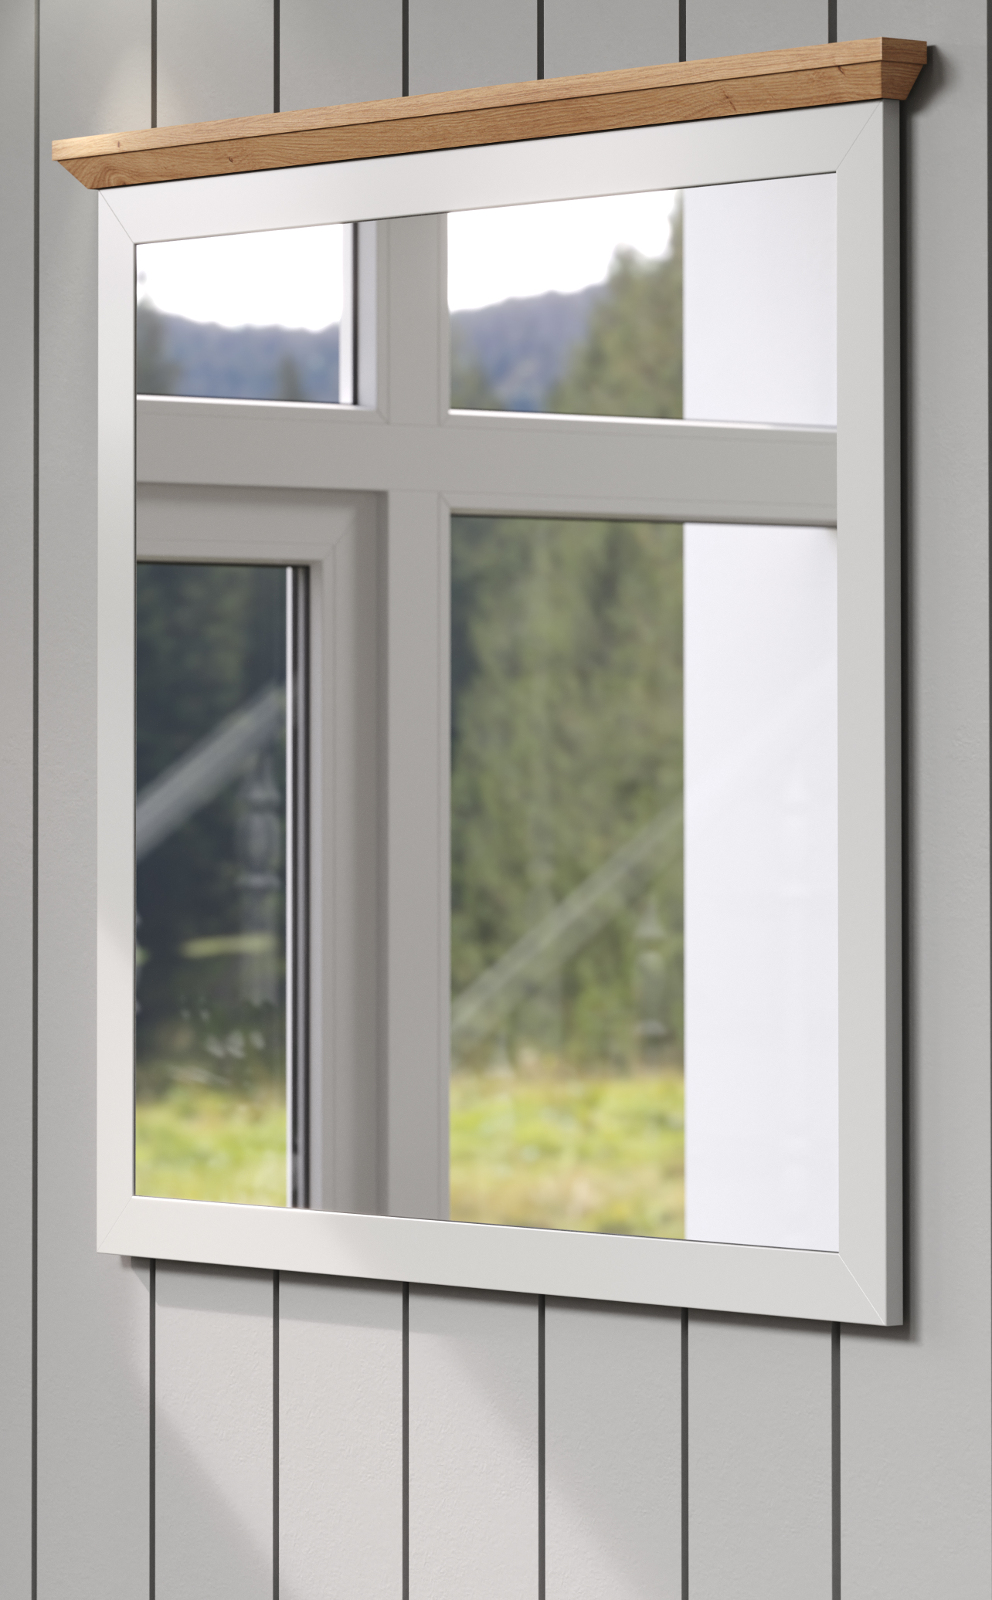 Garderobenspiegel "Landside" in grau und Eiche Artisan Landhaus Flur Diele Spiegel 91 x 89 cm